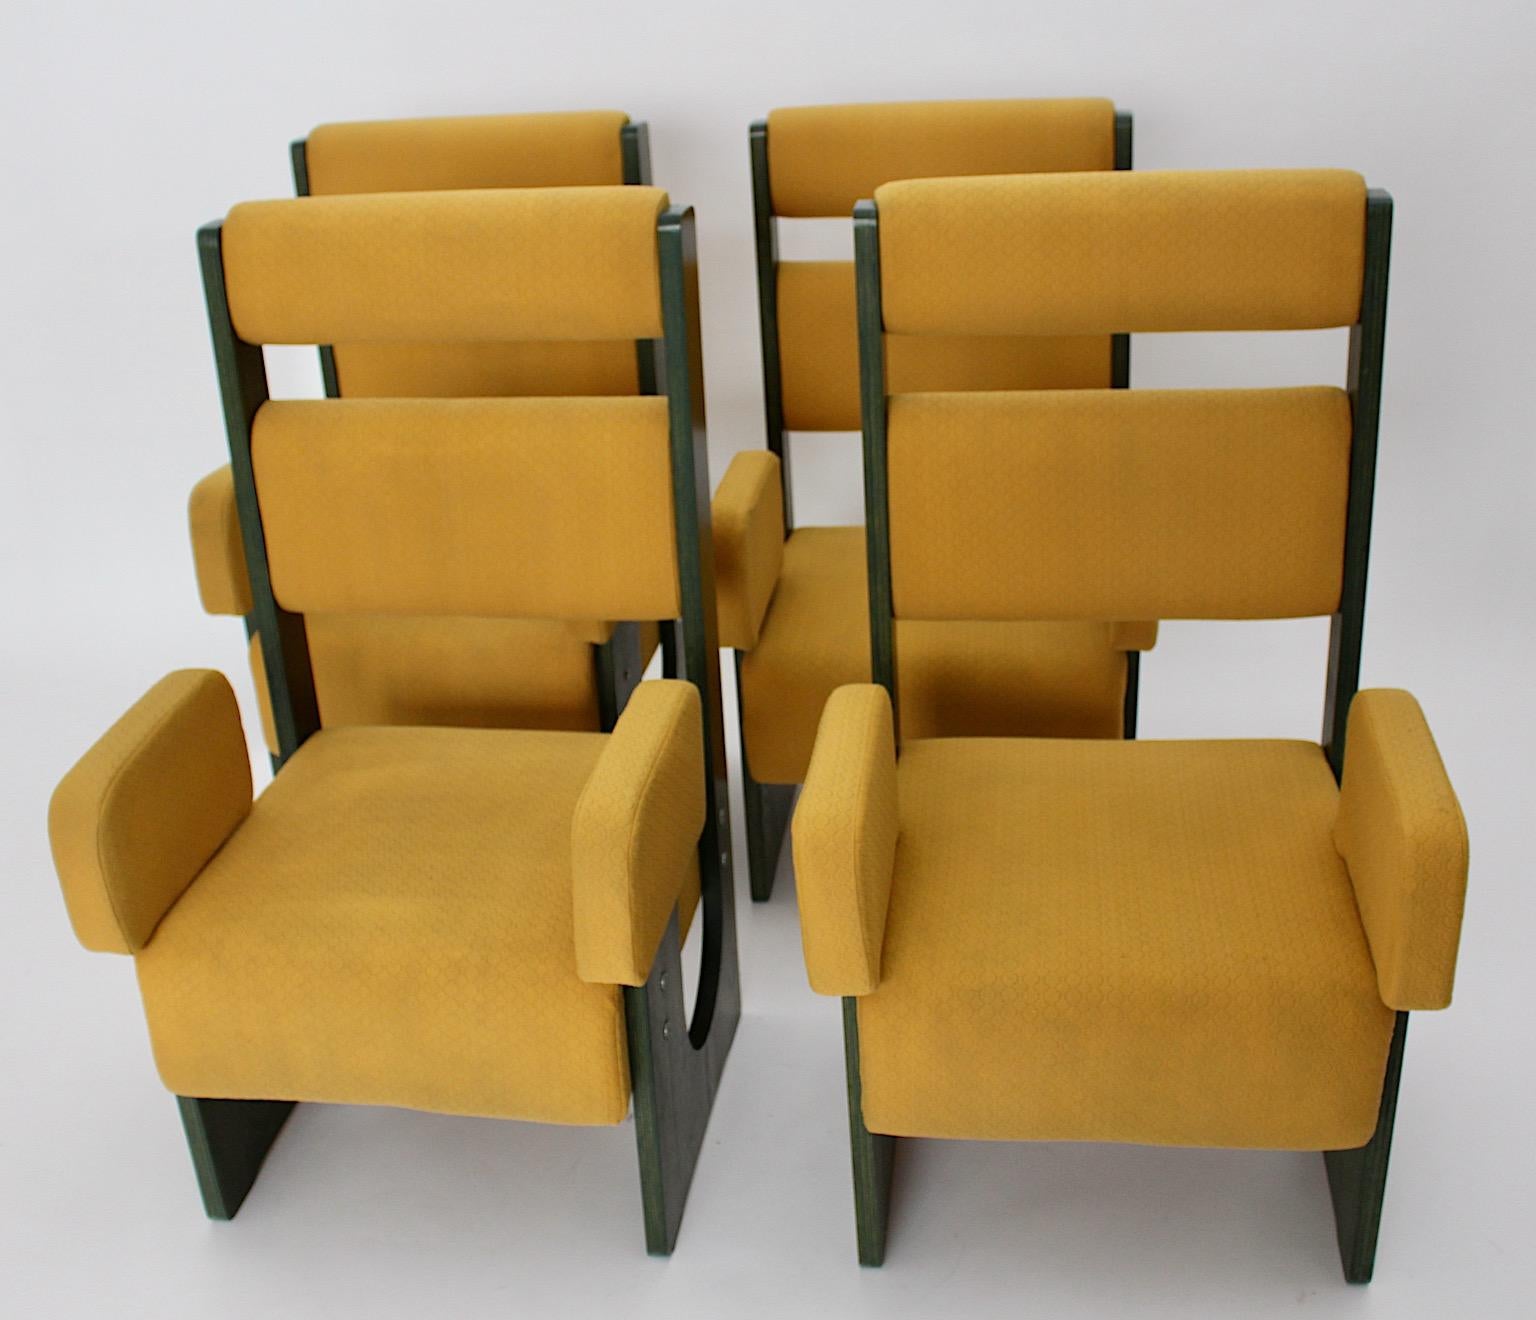 Space Age Vintage authentisch Quartett Satz von 4 freistehenden Sesseln oder Esszimmerstühle aus Eschenholz grün gebeizt mit gelben Stoffbezug 1960er Jahre.
Ein Satz von 4 seltenen authentischen Space Age Sesseln oder Esszimmerstühlen aus grün